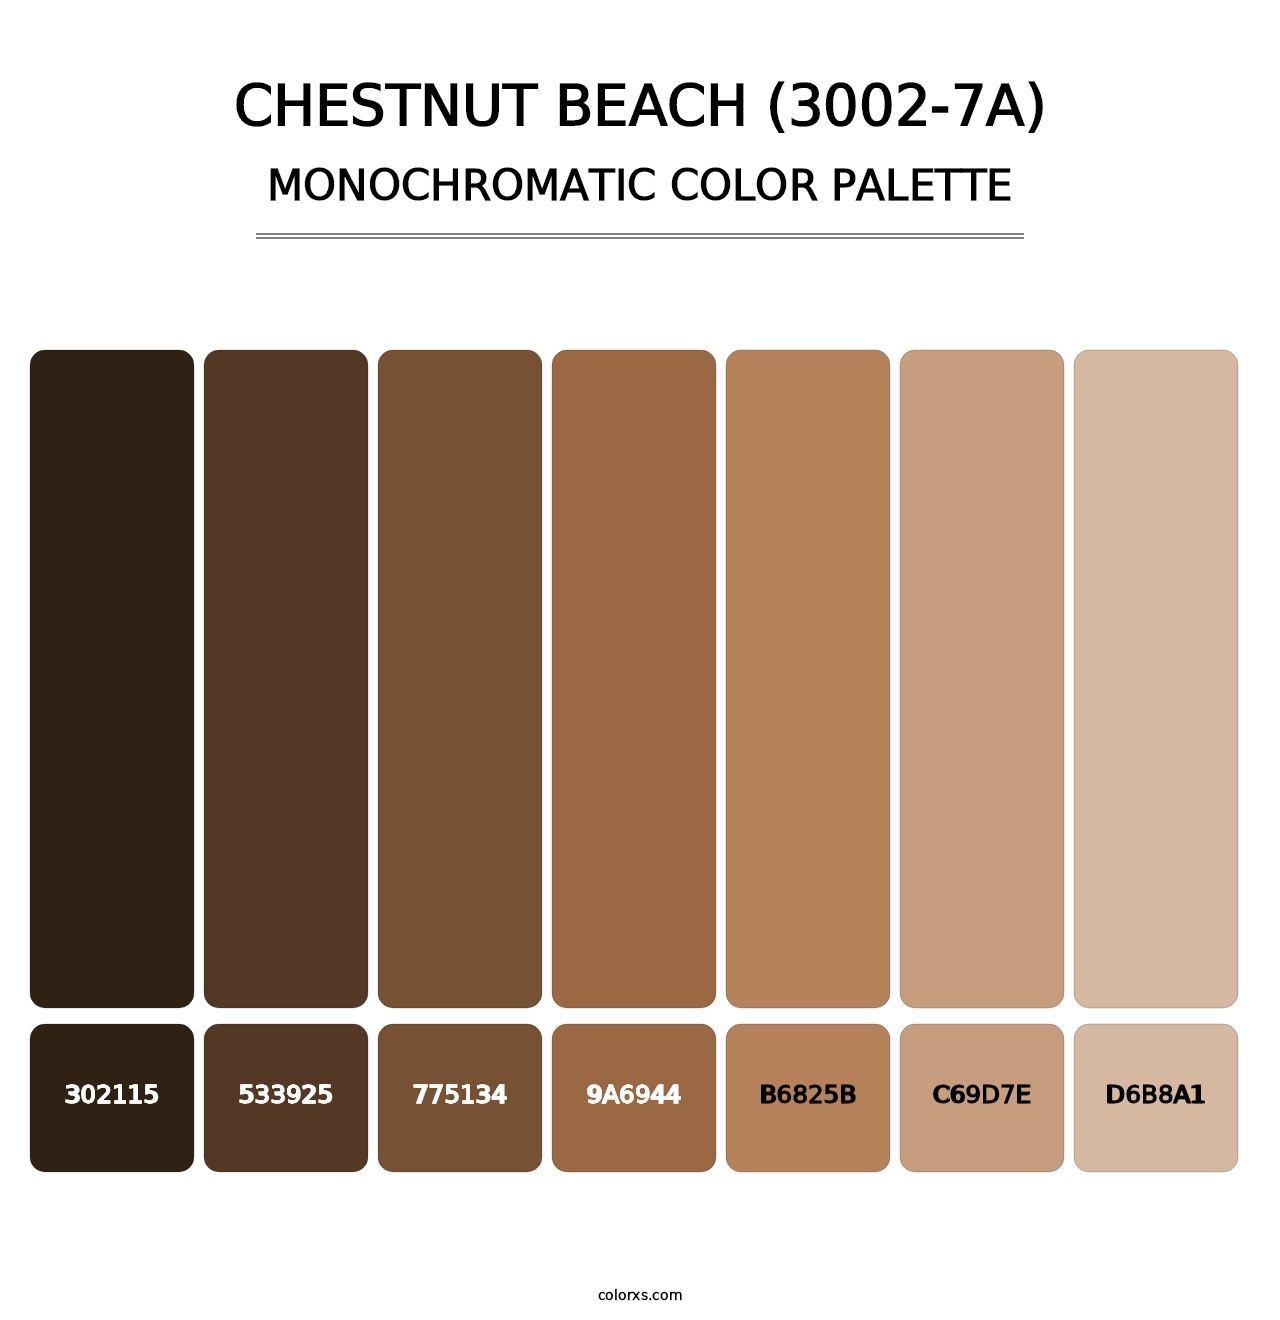 Chestnut Beach (3002-7A) - Monochromatic Color Palette